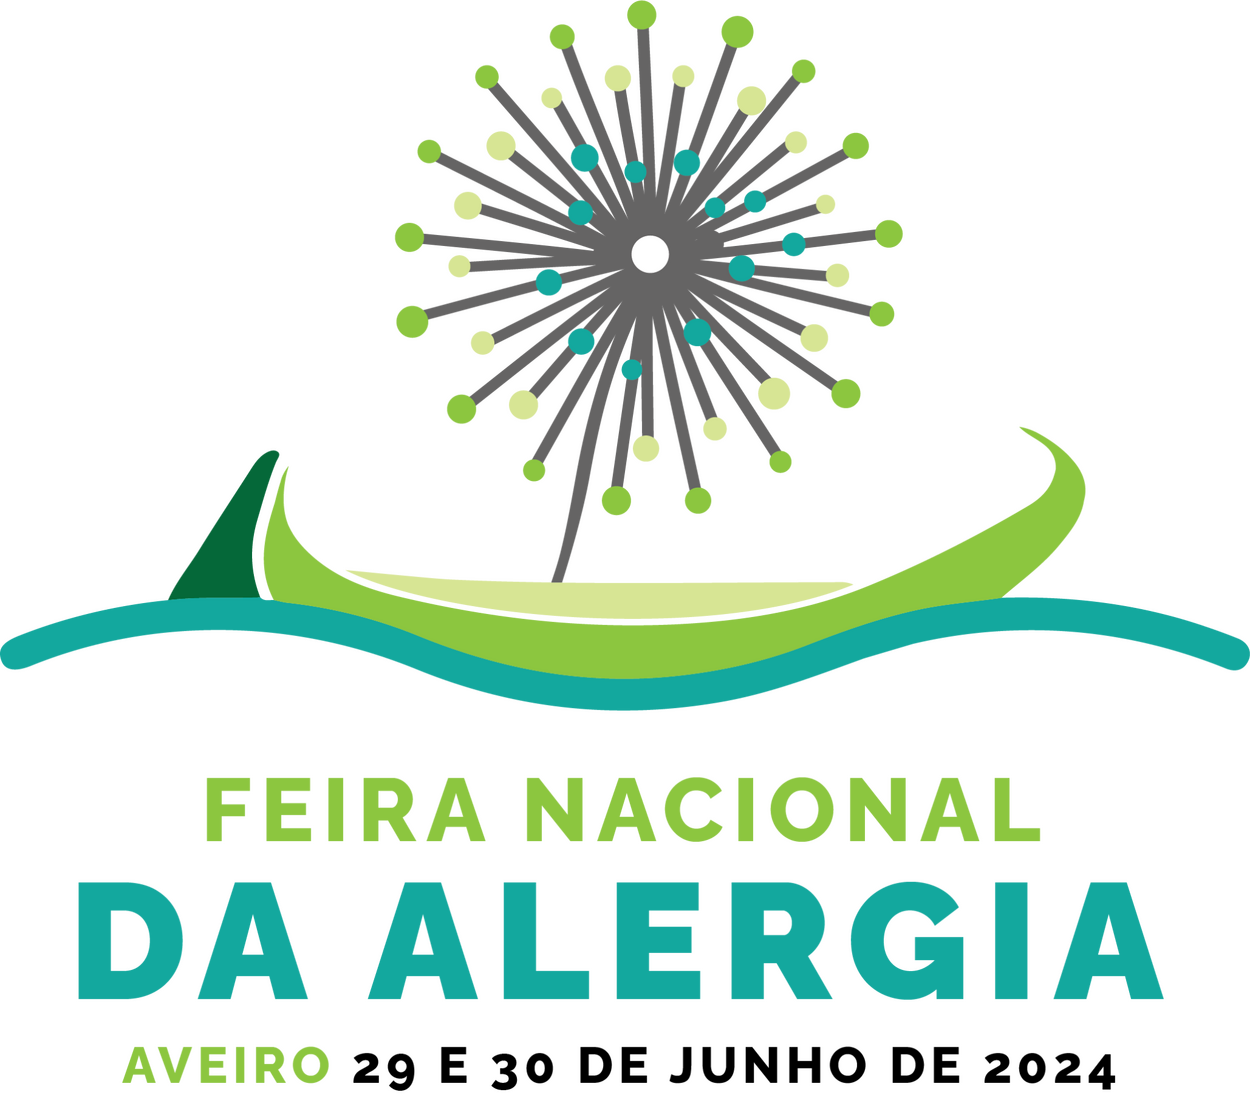 Primeira Feira Nacional da Alergia em Aveiro